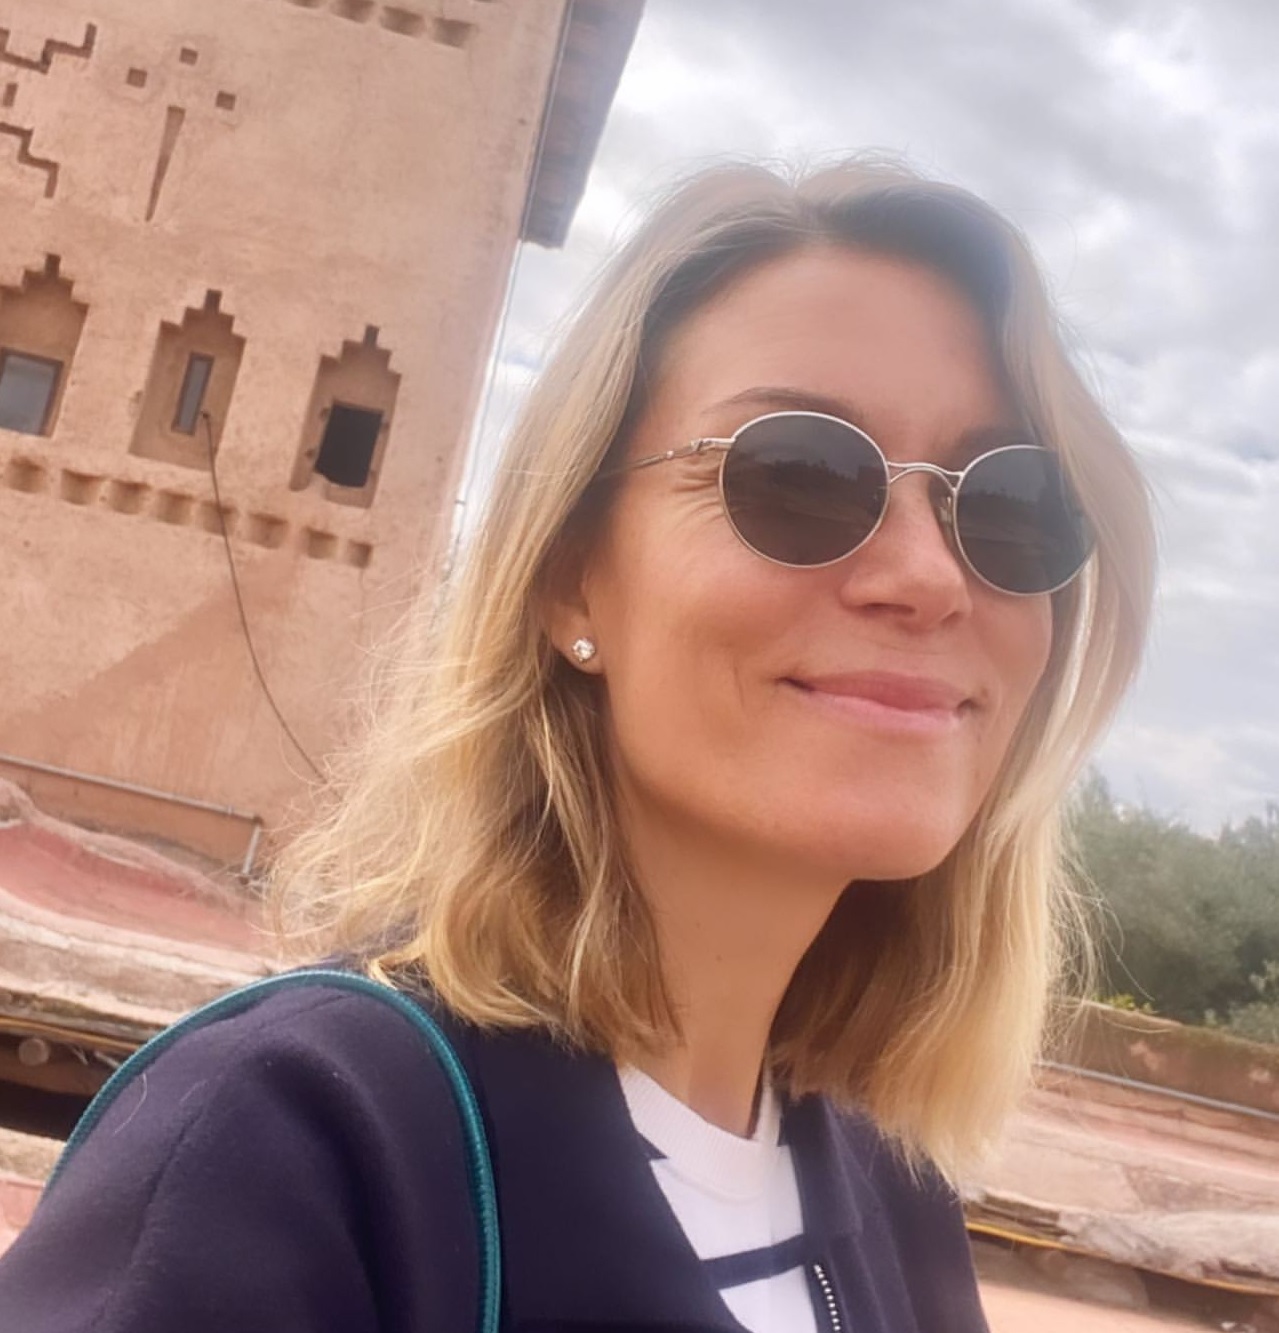 Βίκυ Καγιά: Ταξίδεψε οικογενειακώς στο Μαρόκο - Τα παιδιά κλέβουν την παράσταση